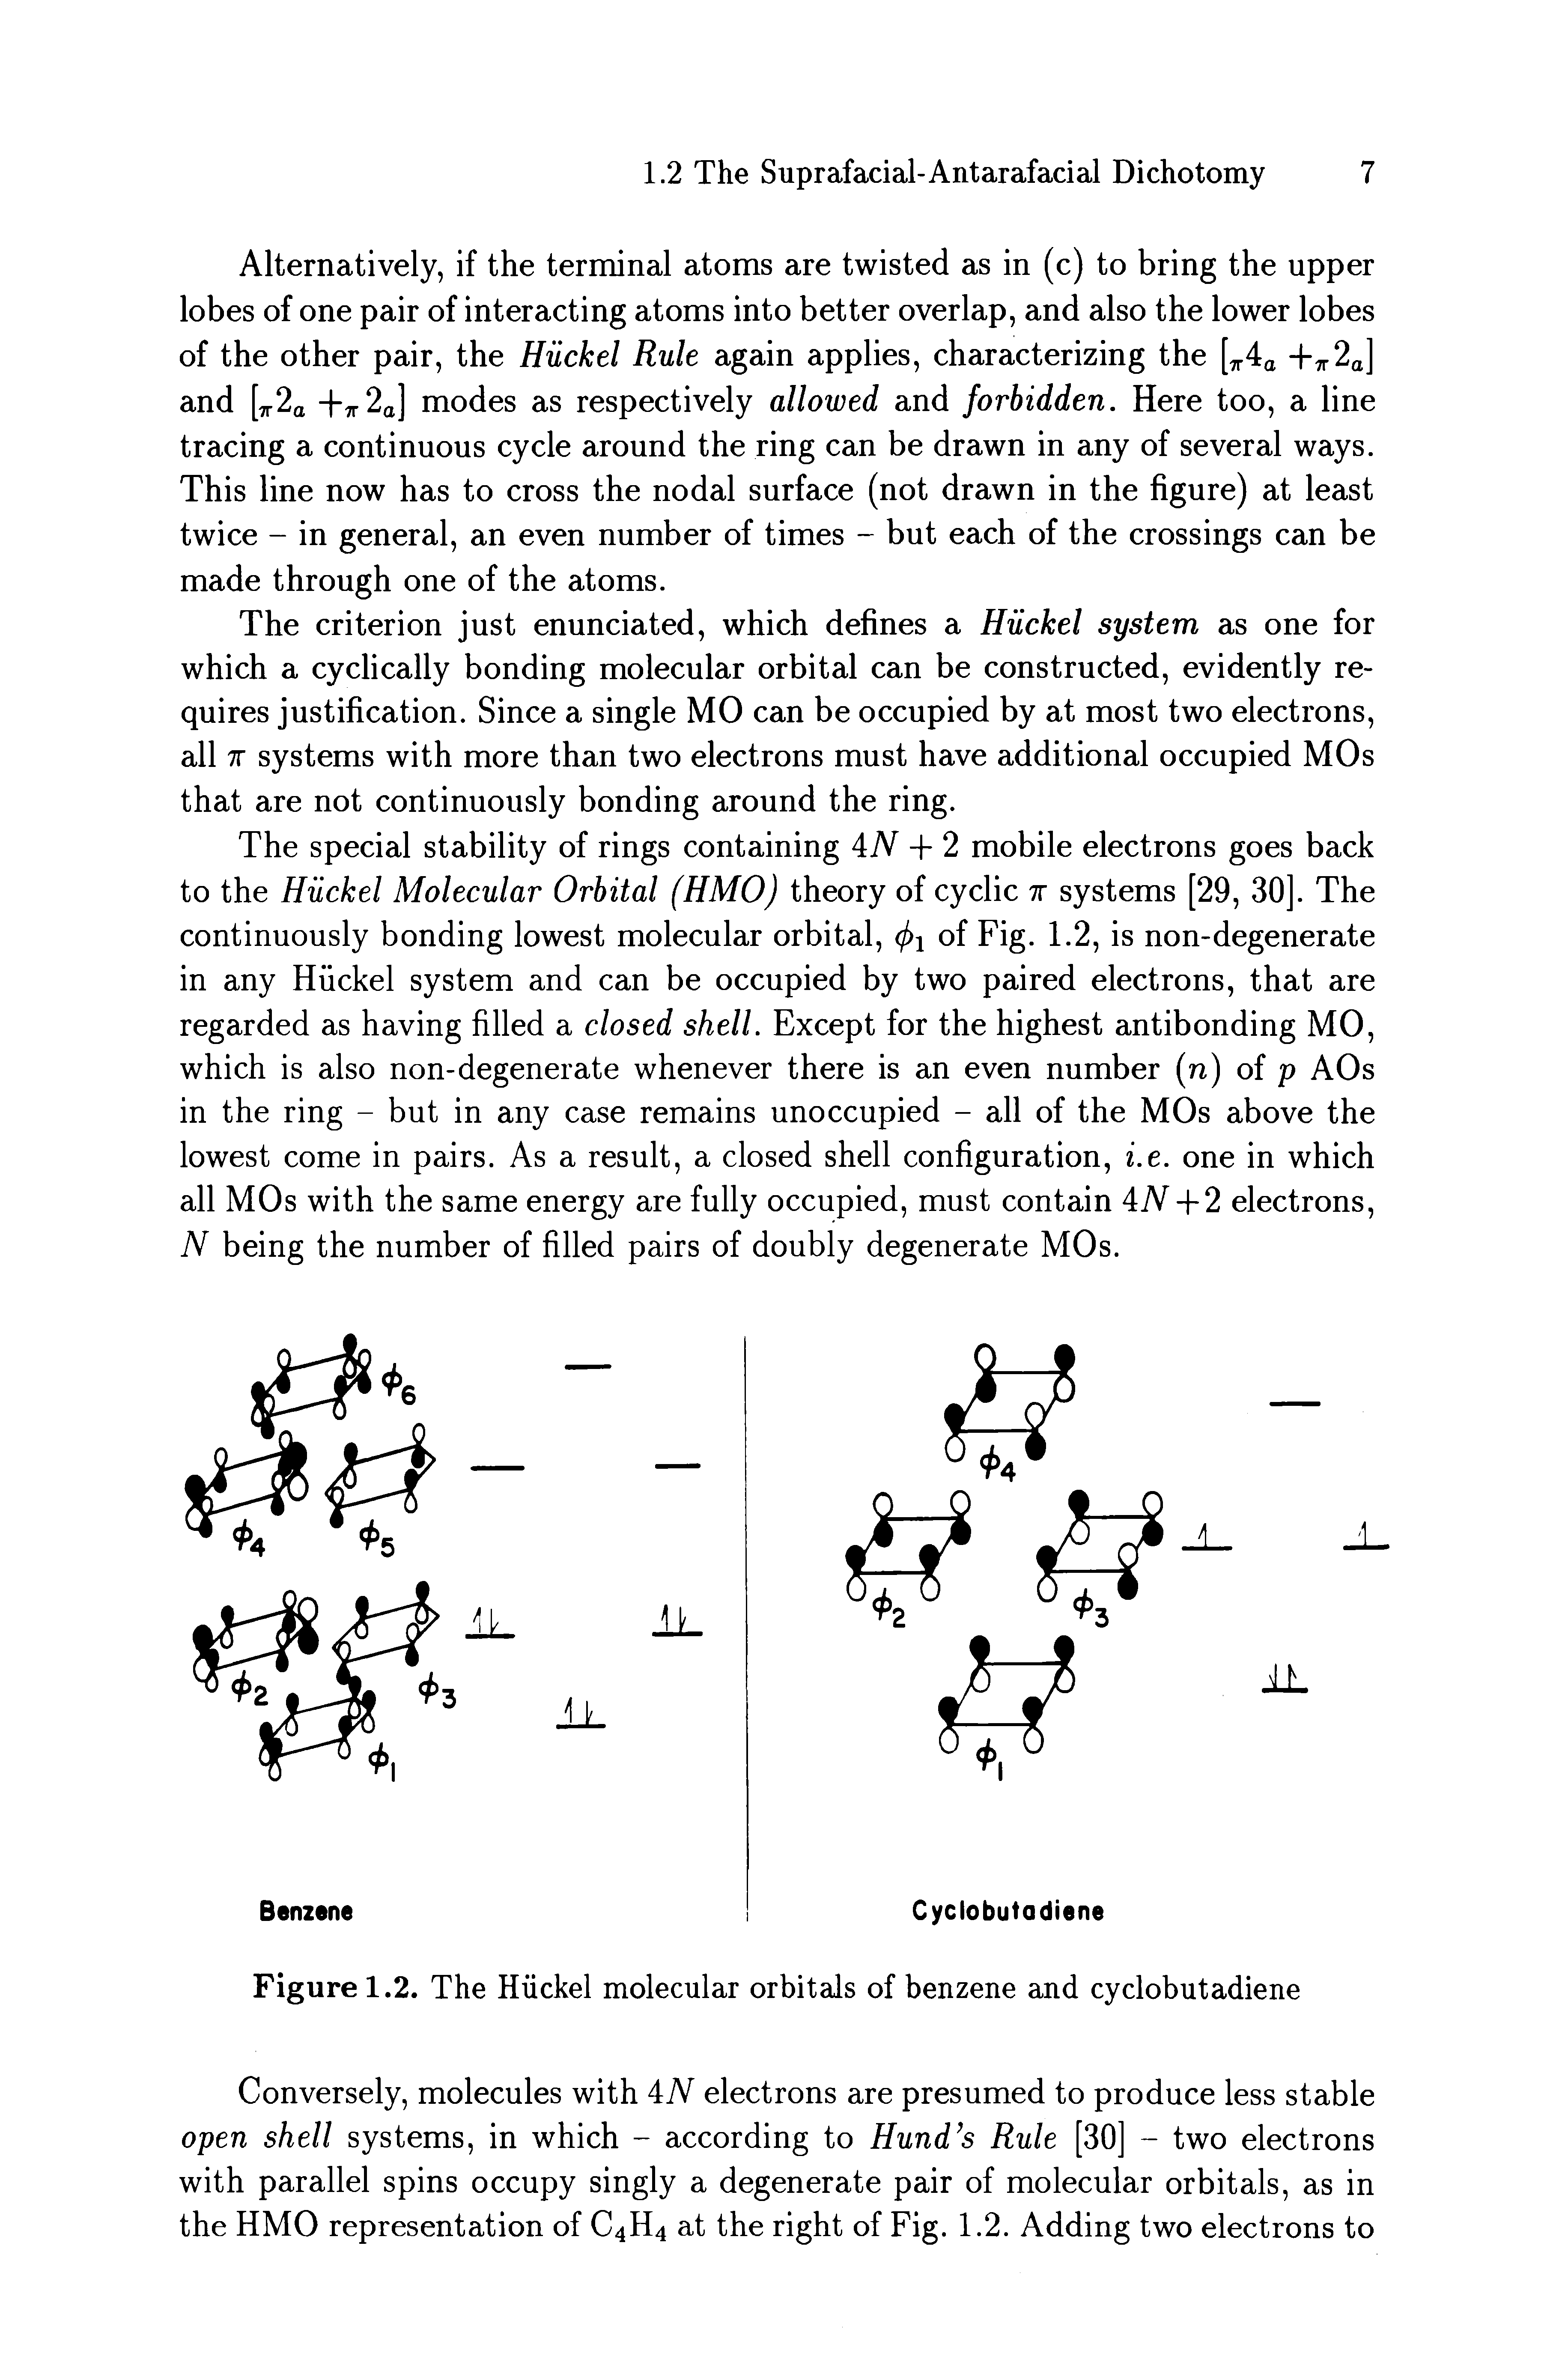 Figure 1.2. The Hiickel molecular orbitals of benzene and cyclobutadiene...